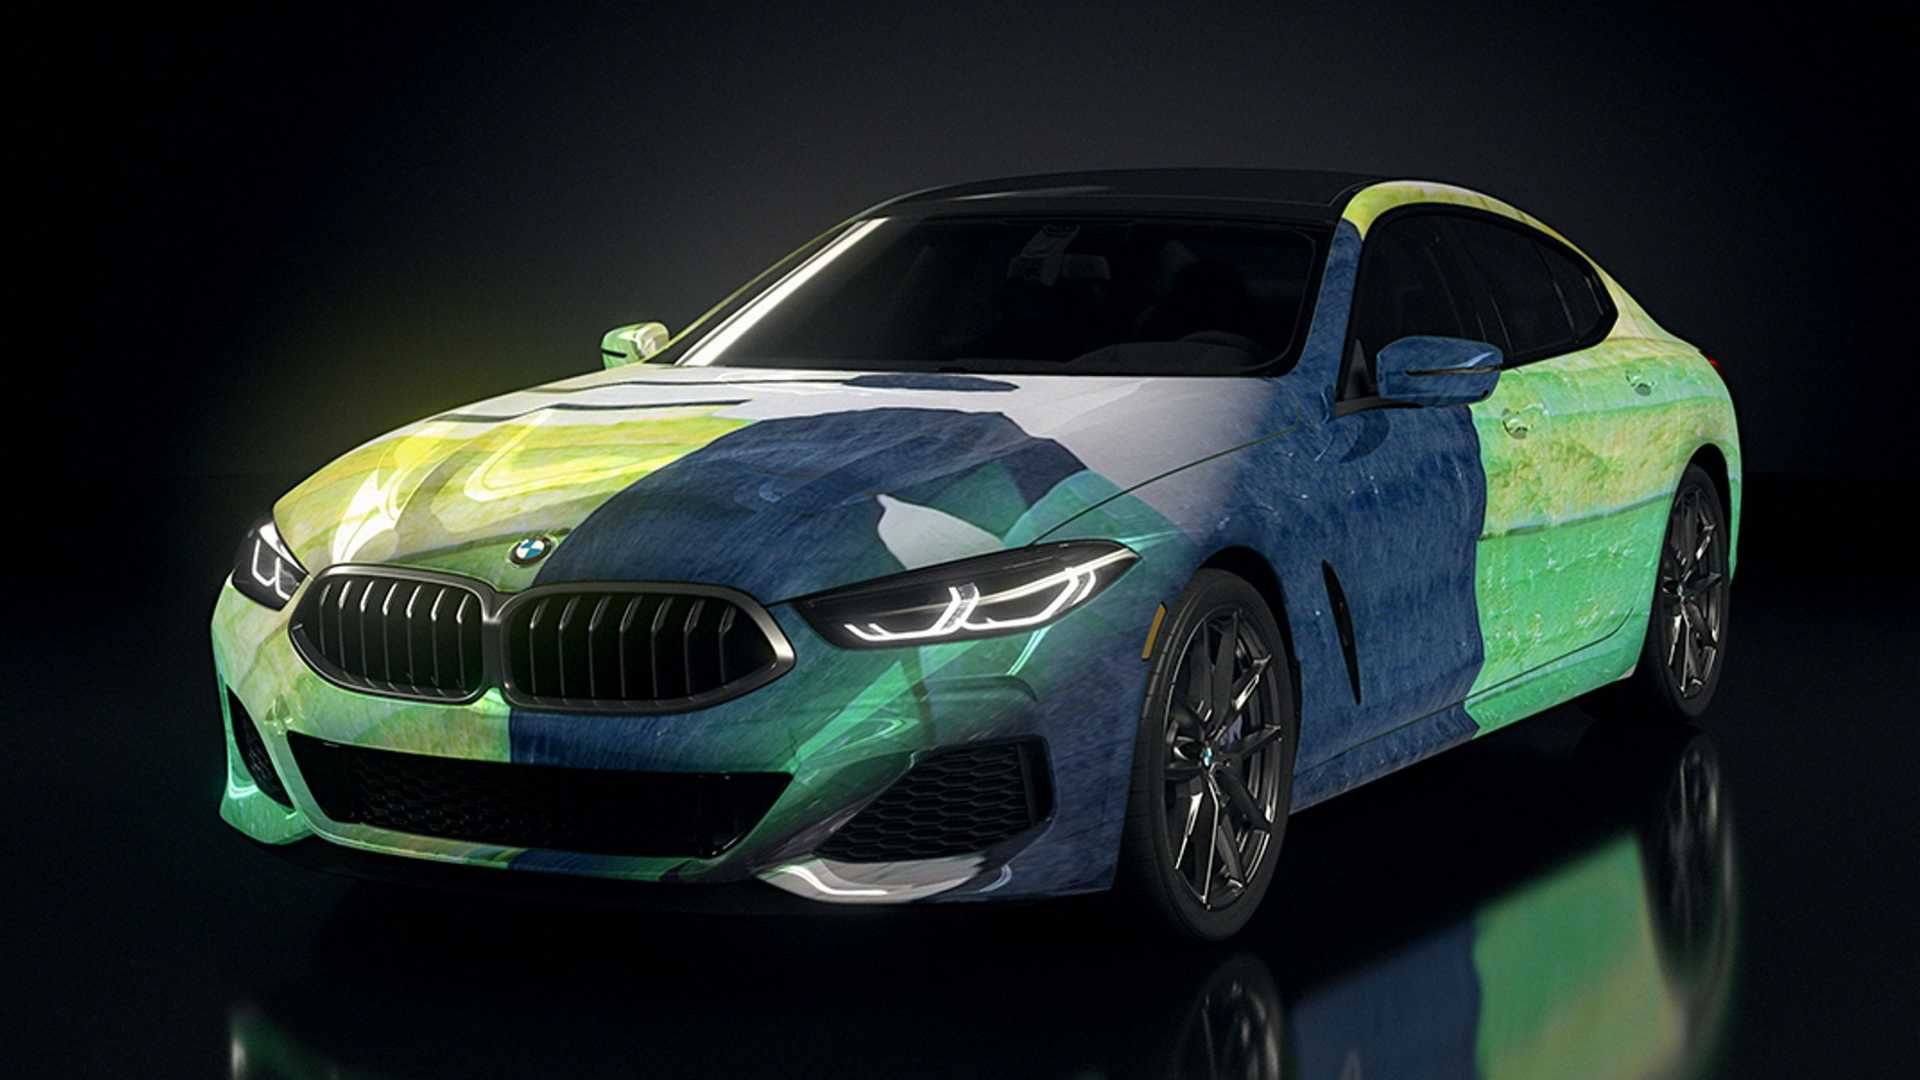 مرجع متخصصين ايران بي ام و سري 8 گرن كوپه / BMW 8 Series Gran Coupe رنگ سبز هوش مصنوعي